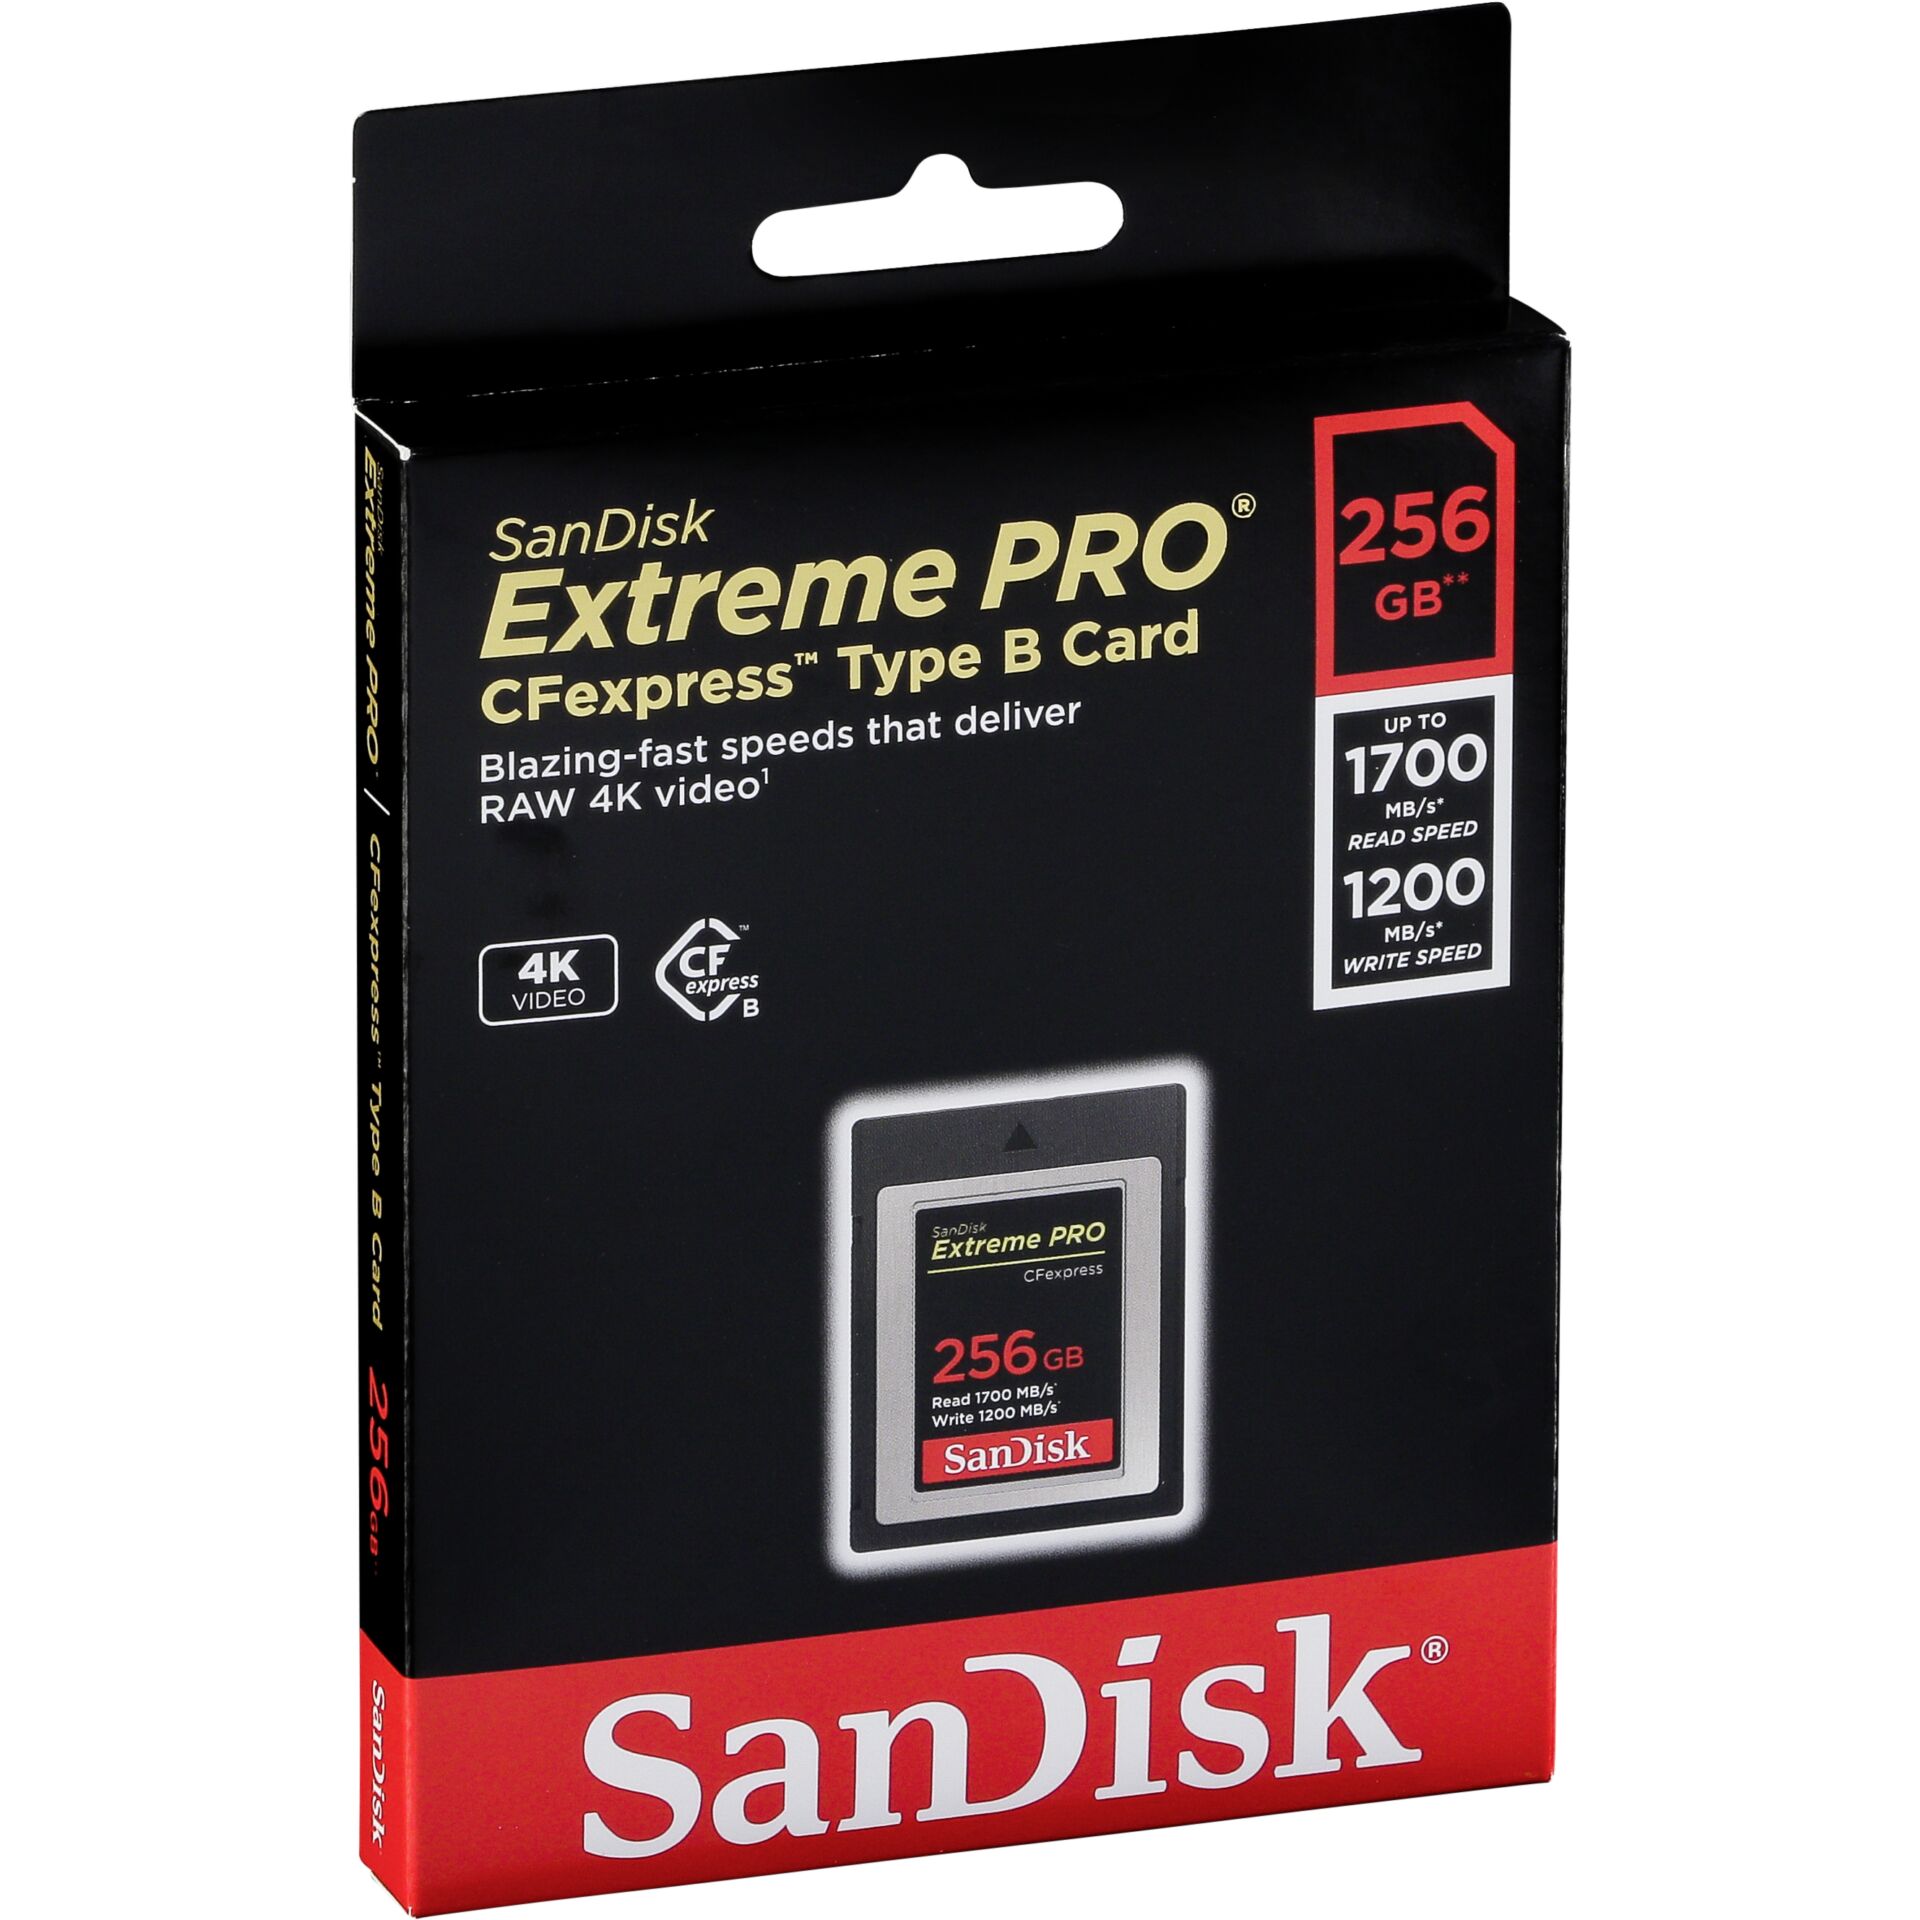 SanDisk SDCFE-256G-GN4NN Speicherkarte 256 GB CFexpress